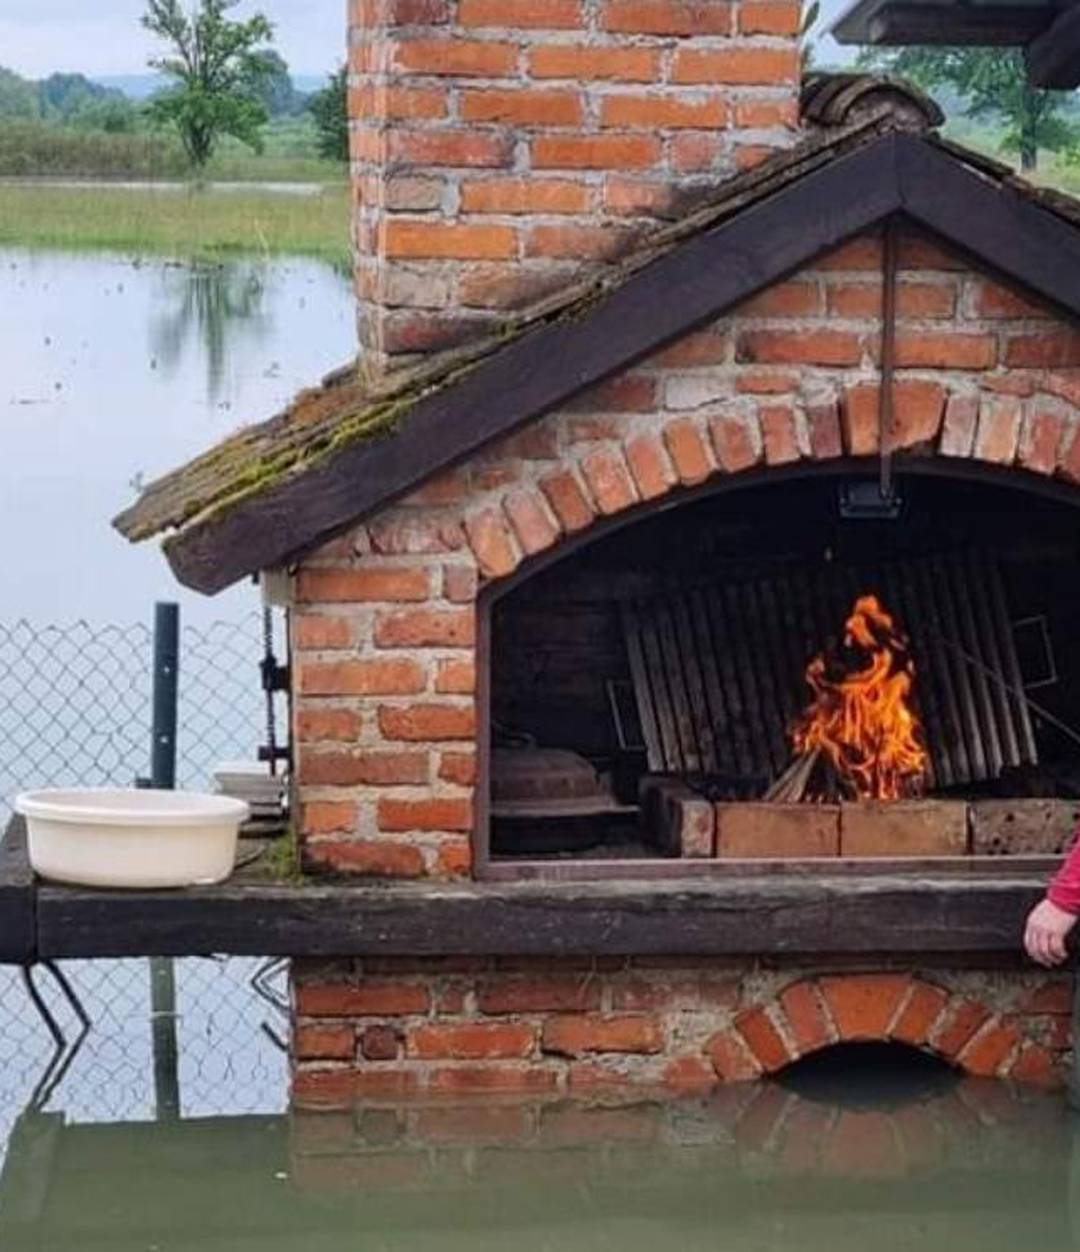 FOTO I u muci s pozitivom: U Gradecu naložio vatru za roštilj, a oko njega sve  poplavljeno...